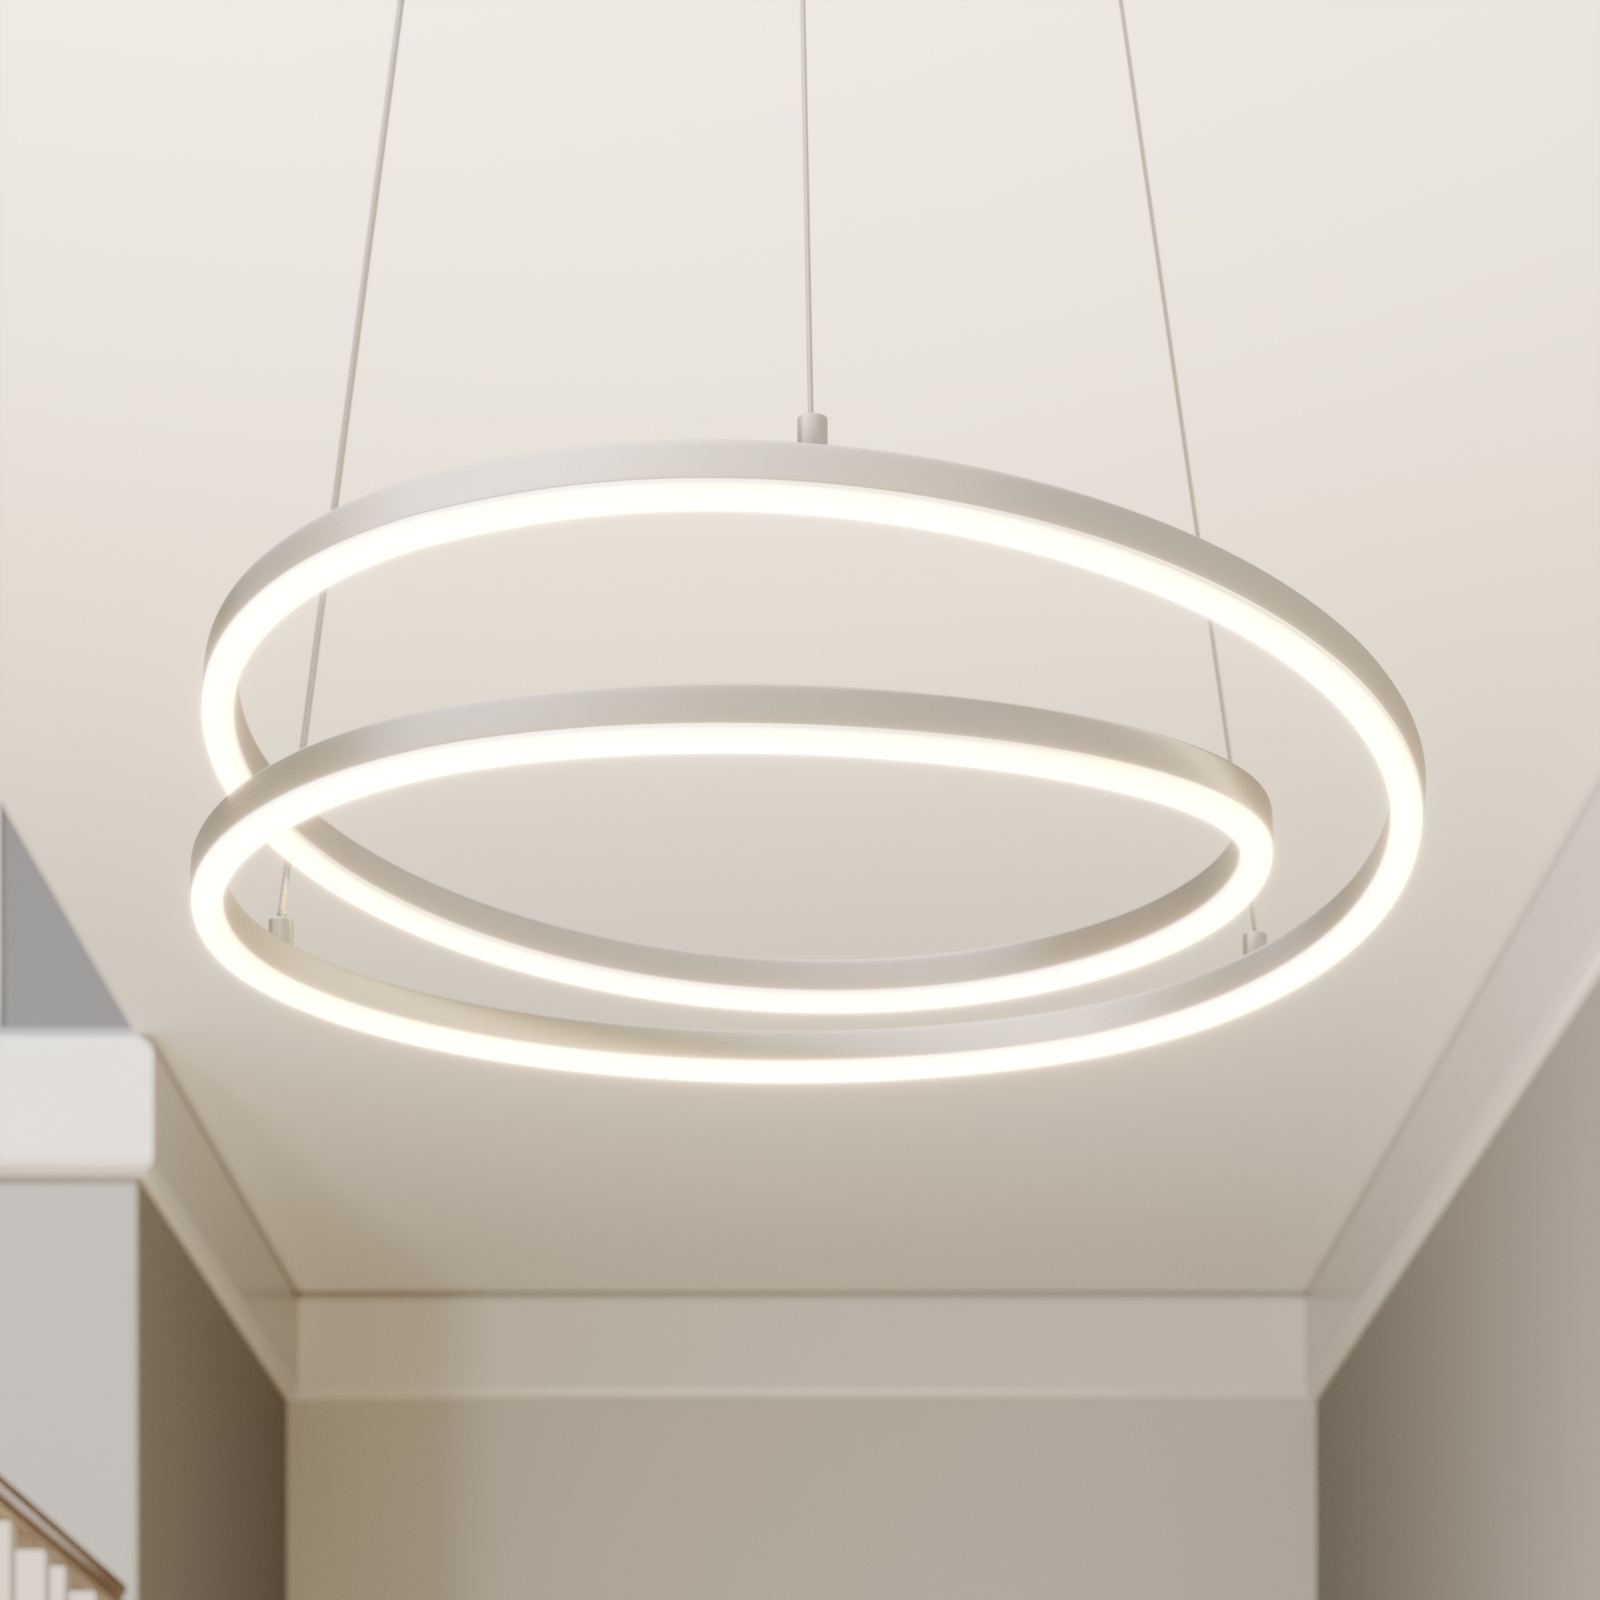 hulp Beschrijven Heb geleerd Lindby Davian LED hanglamp, dimbaar, nikkel | Lampen24.be